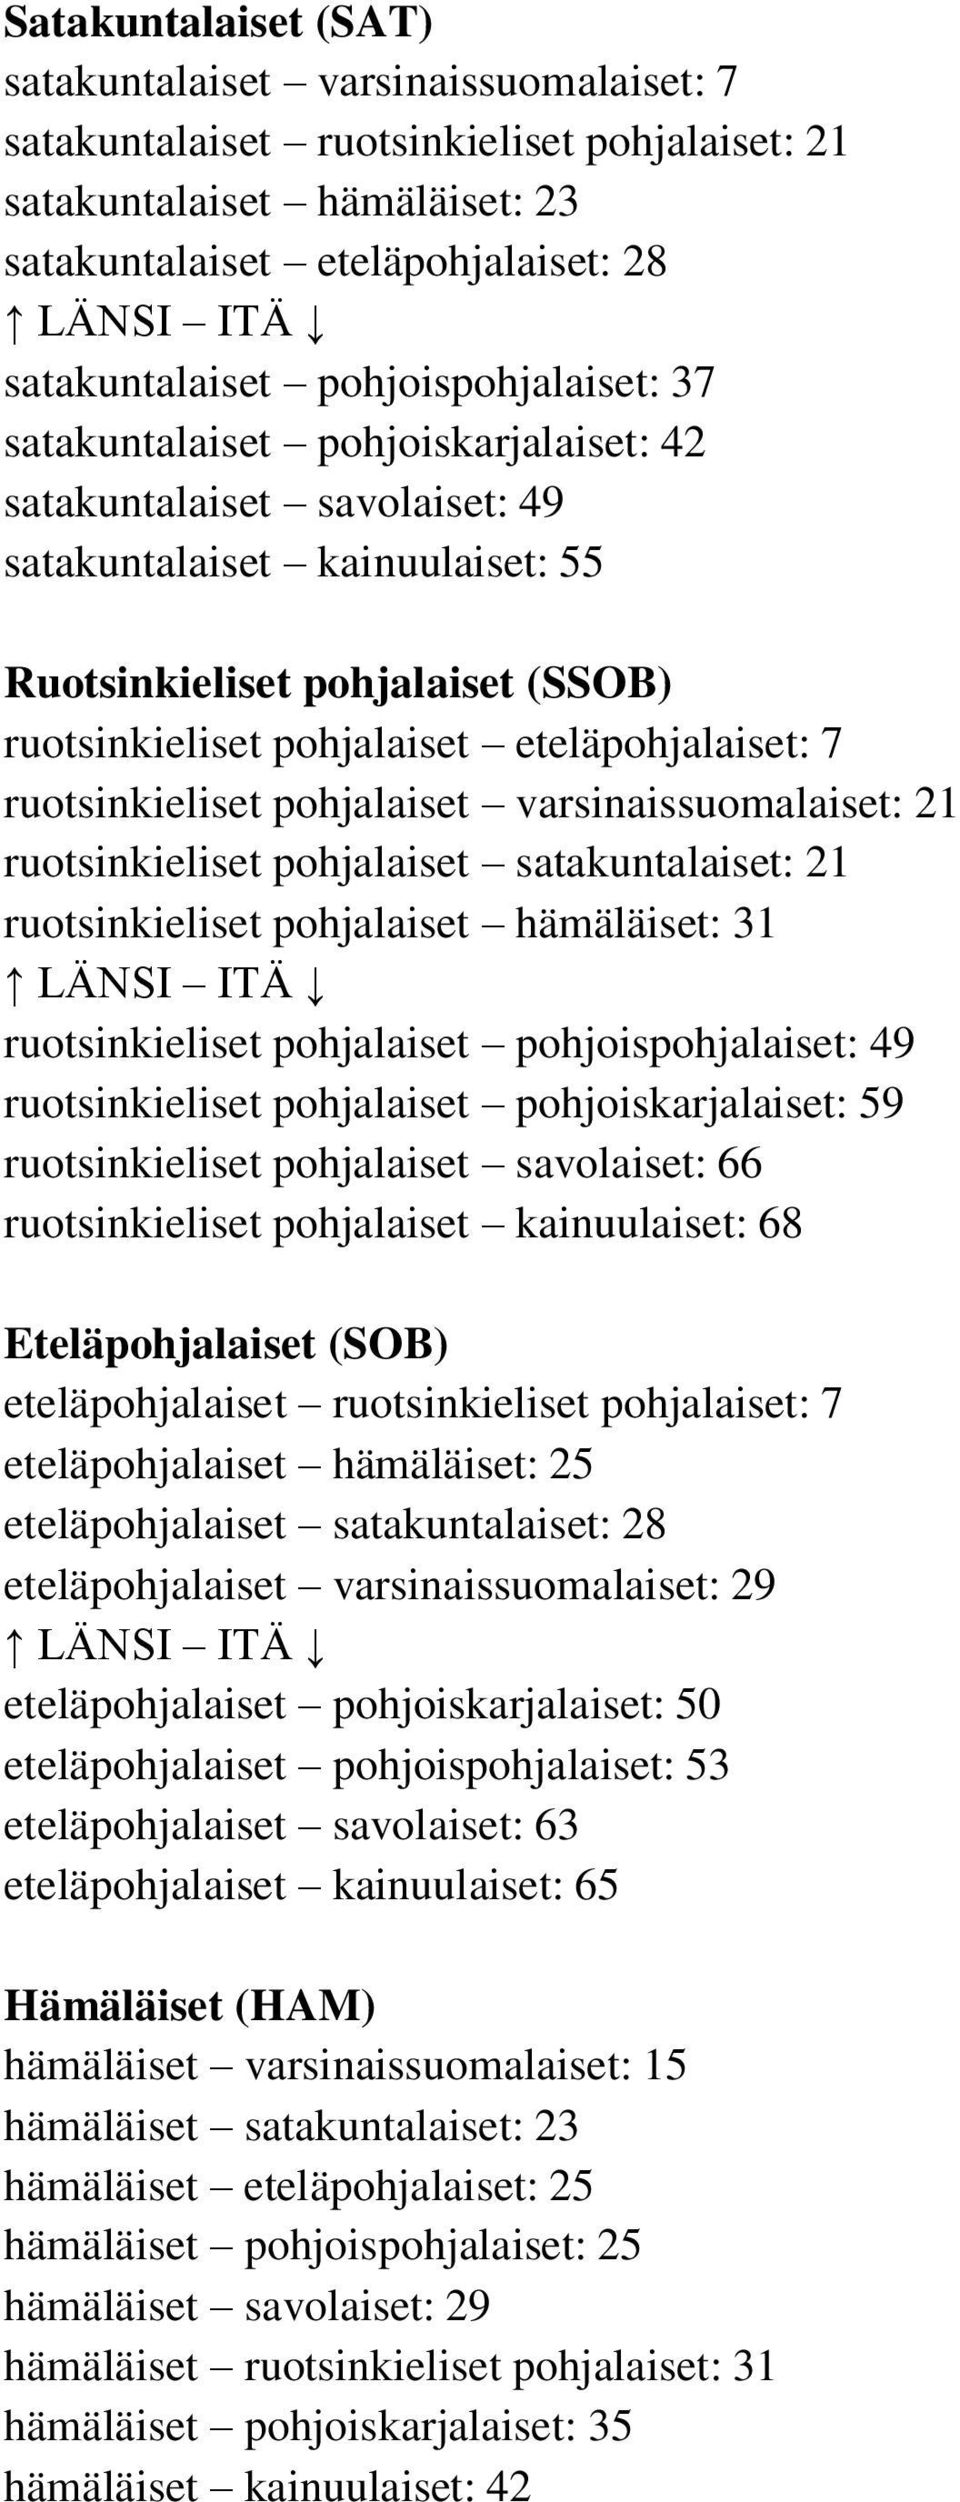 pohjalaiset eteläpohjalaiset: 7 ruotsinkieliset pohjalaiset varsinaissuomalaiset: 21 ruotsinkieliset pohjalaiset satakuntalaiset: 21 ruotsinkieliset pohjalaiset hämäläiset: 31 LÄNSI ITÄ